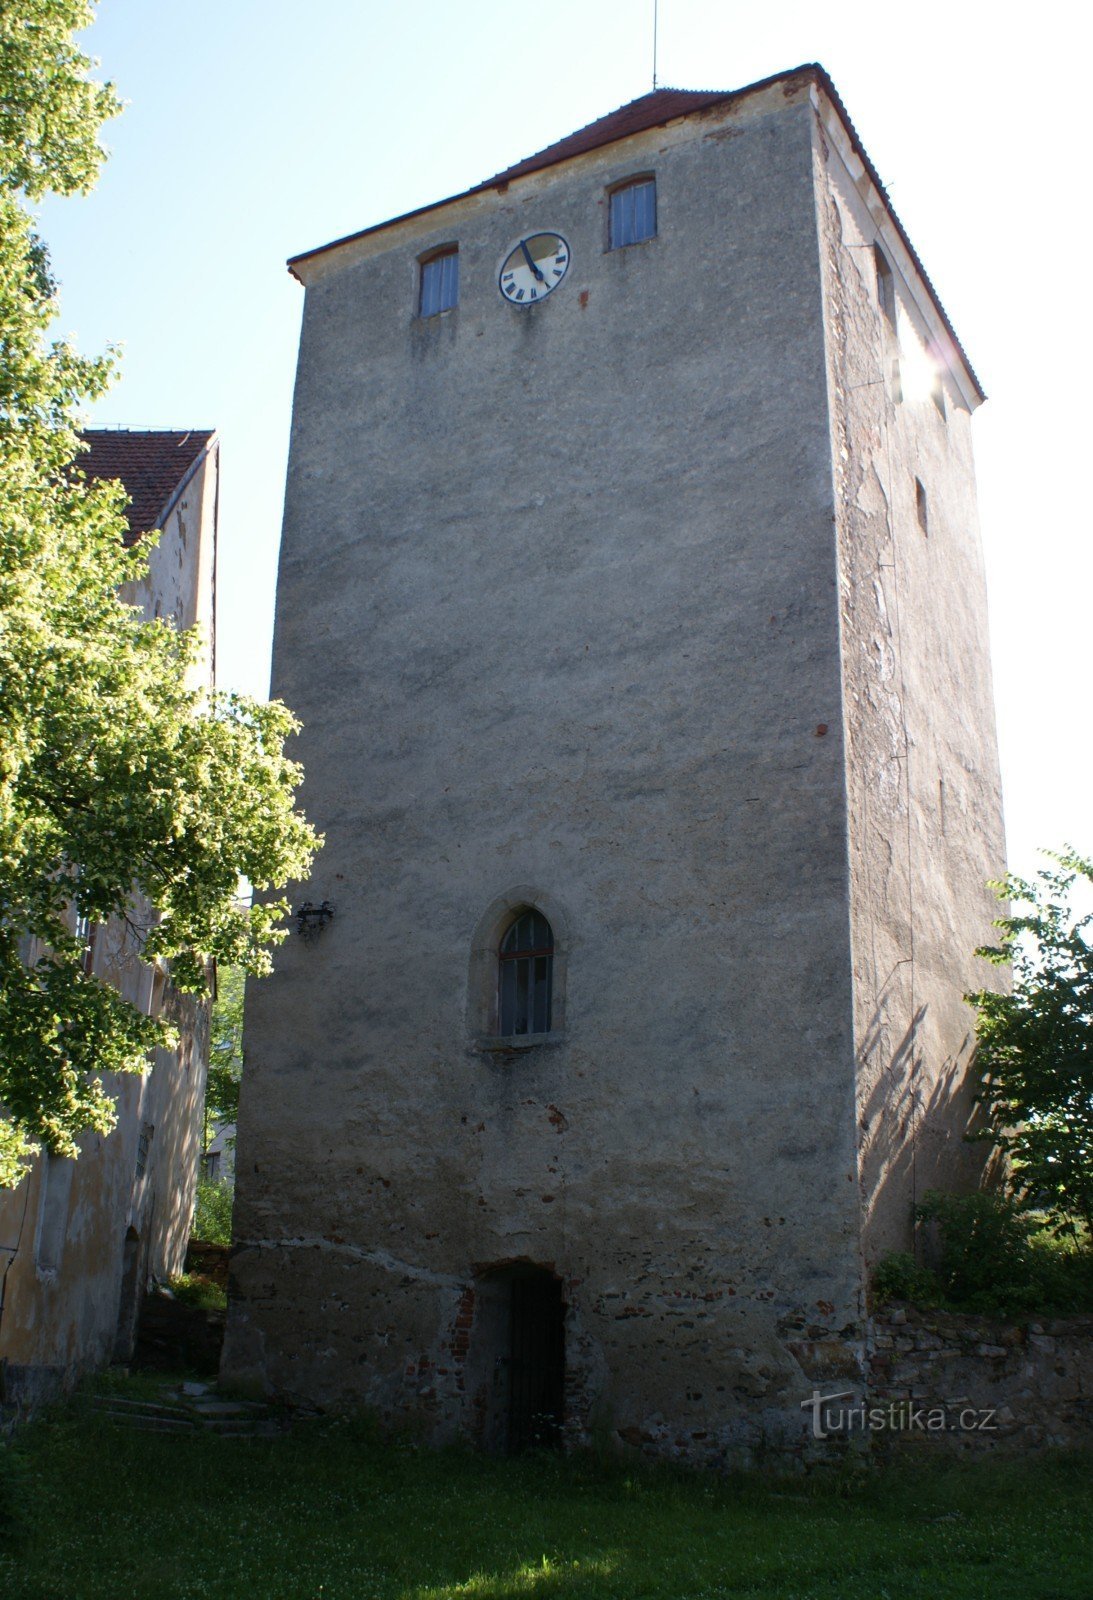 centro de la fortaleza - torre residencial